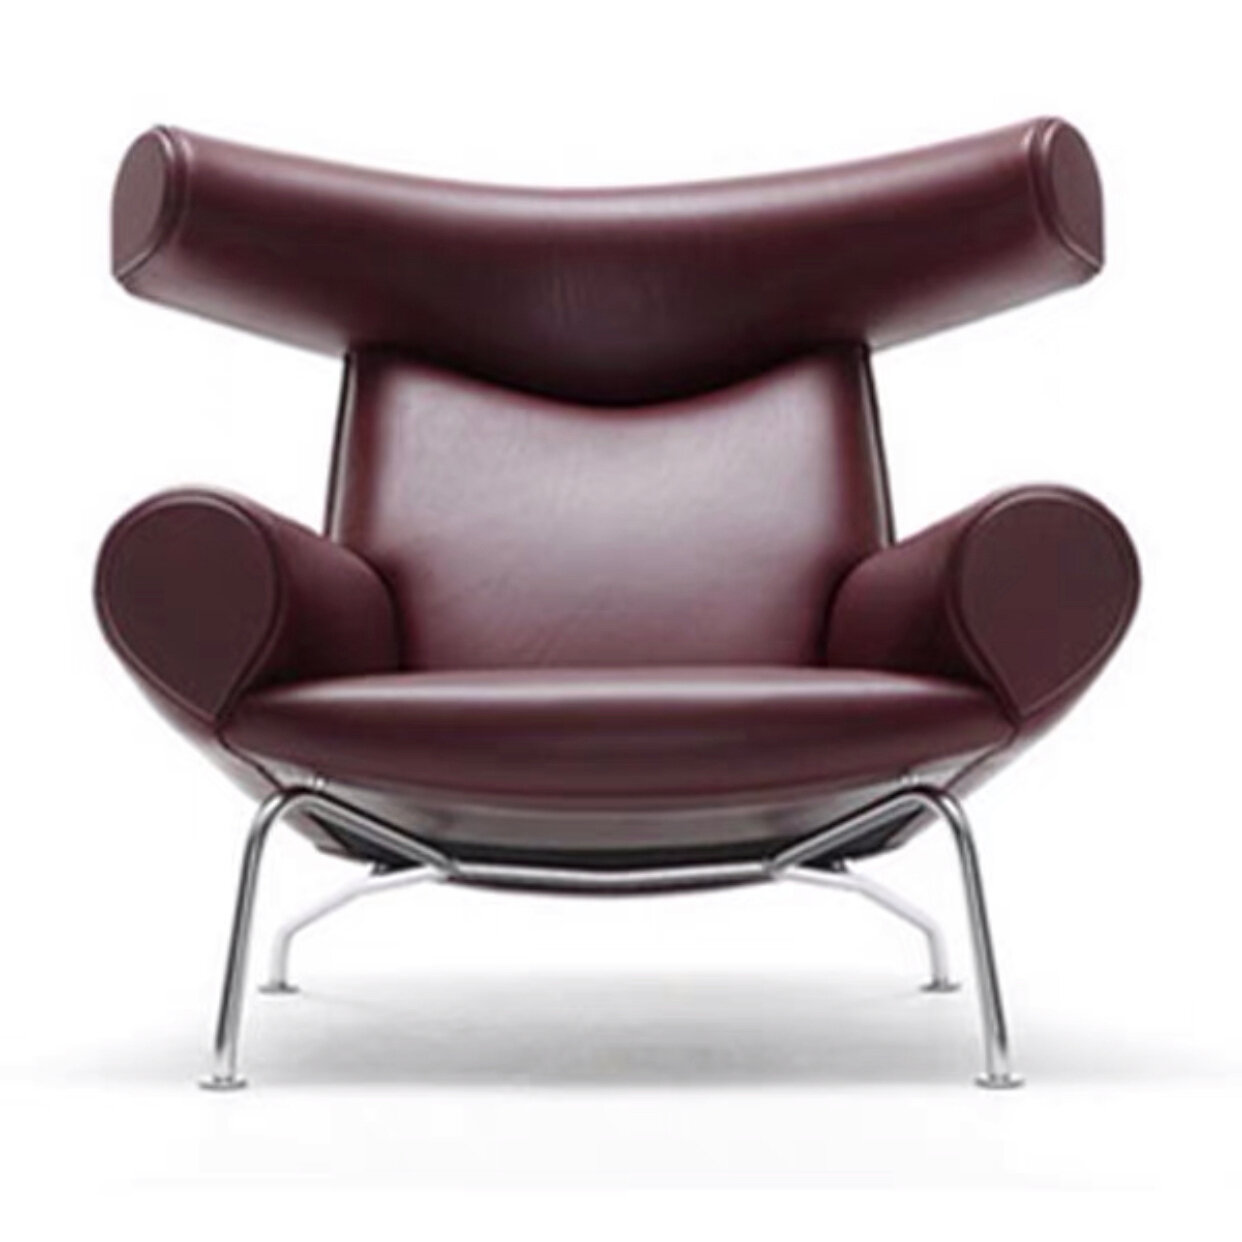 Кресло в стиле Wegner Ox armchair (оттоманка в цвет кресла микроволокно) - фотография № 6